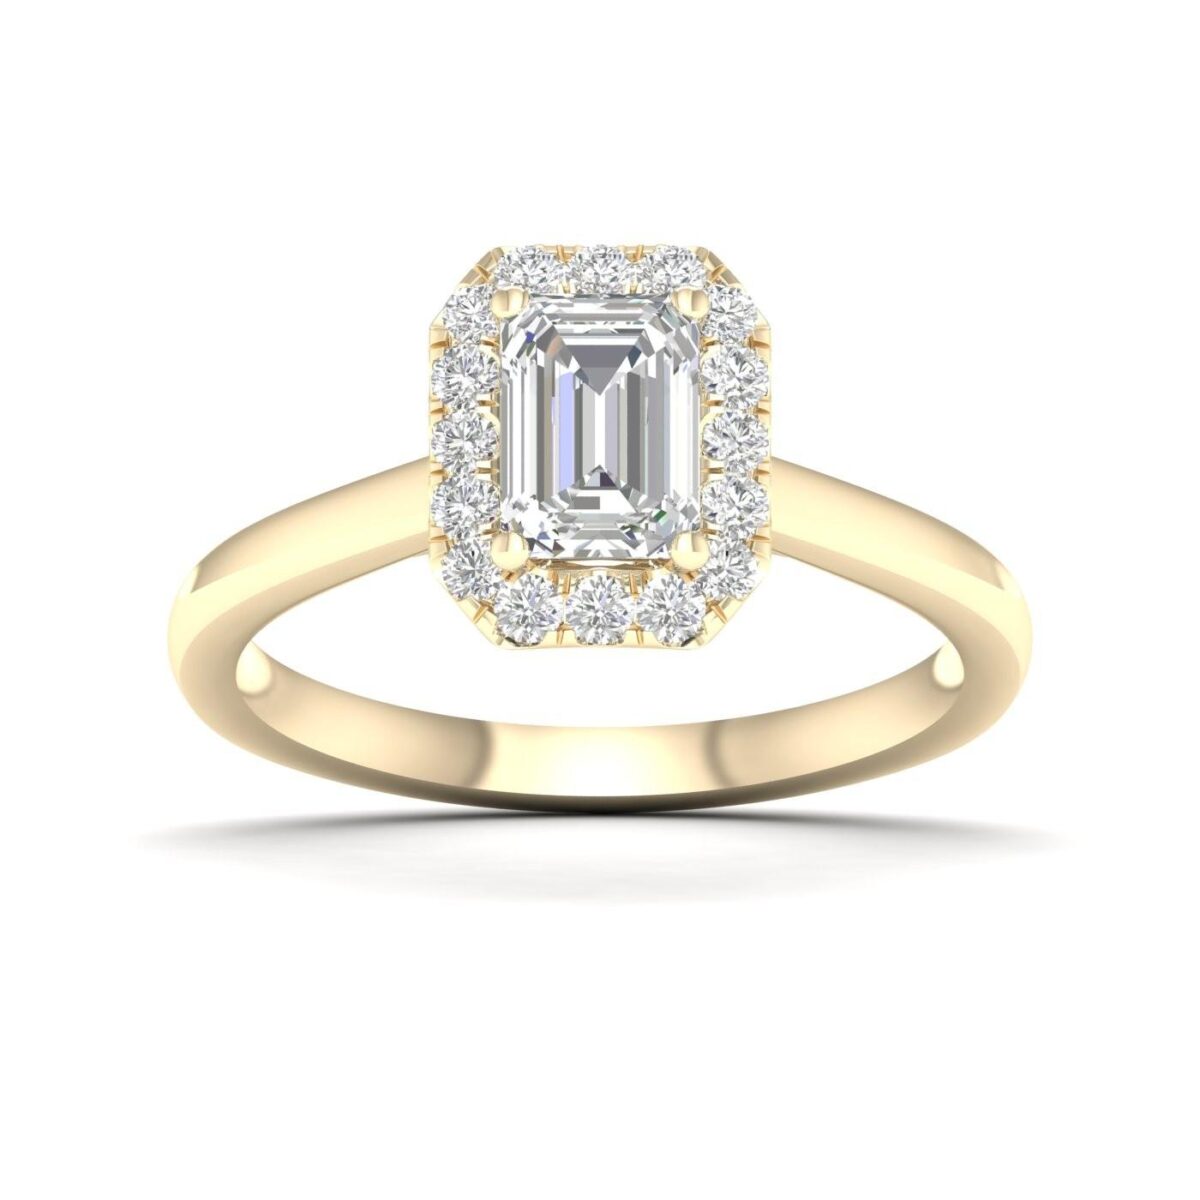 Kullast sõrmus teemantidega 0,90 ct. Kood: 51hh